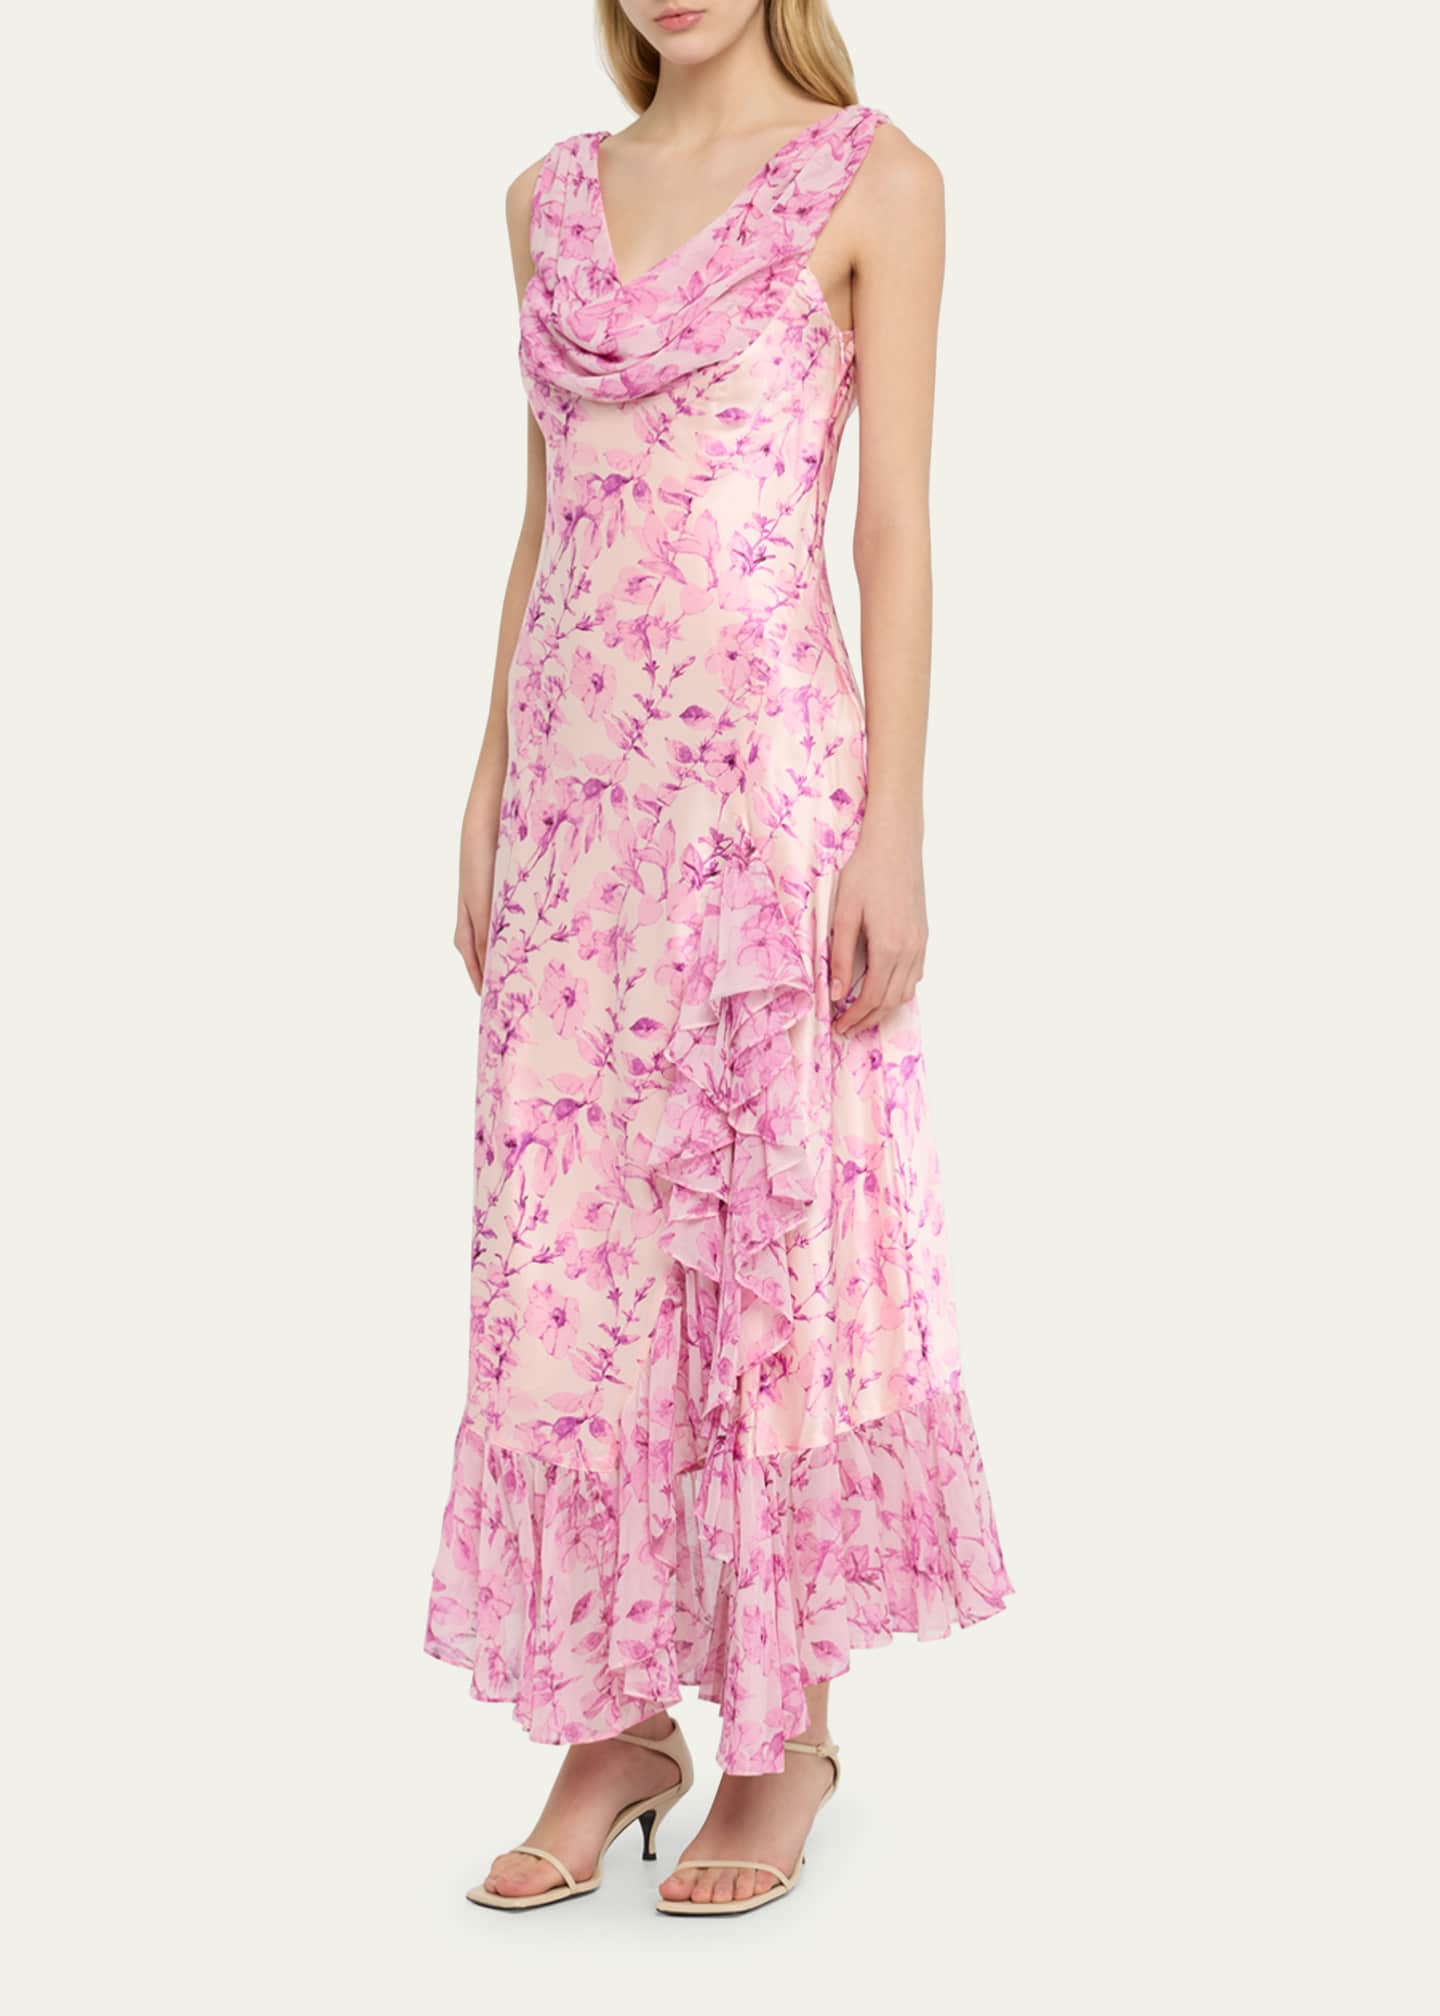 Cinq a Sept Raya Long Floral Silk Sleeveless Ruffle Dress - Bergdorf ...